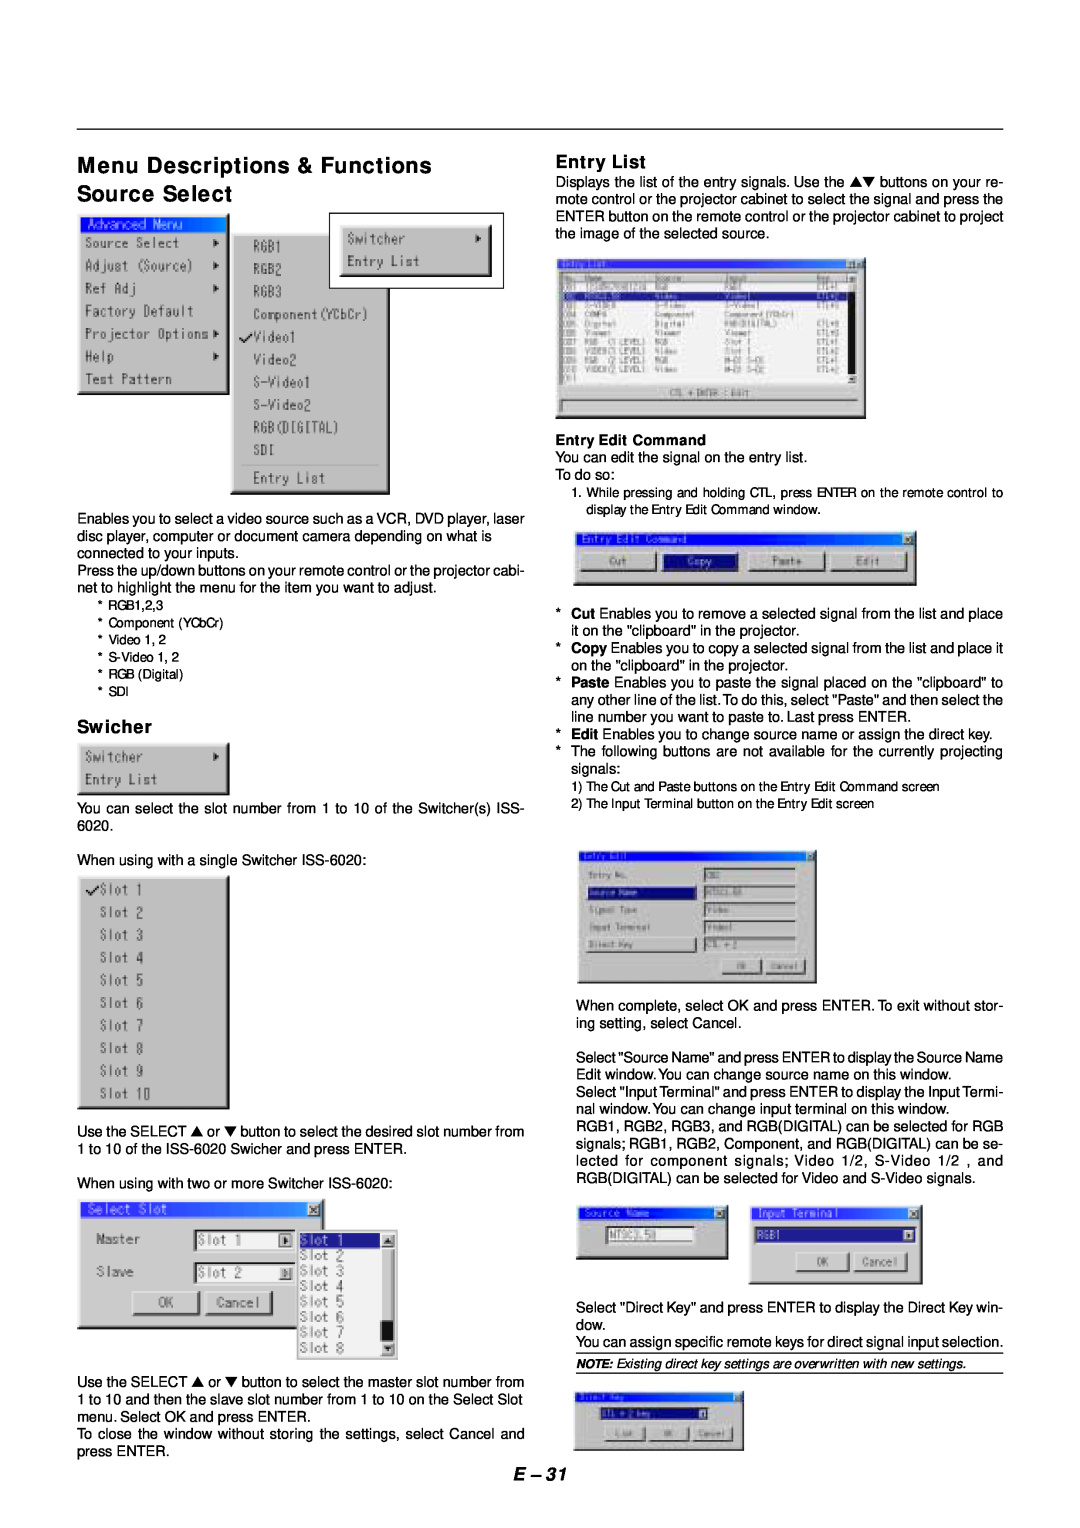 NEC SX4000 user manual Menu Descriptions & Functions Source Select, Swicher, Entry List 